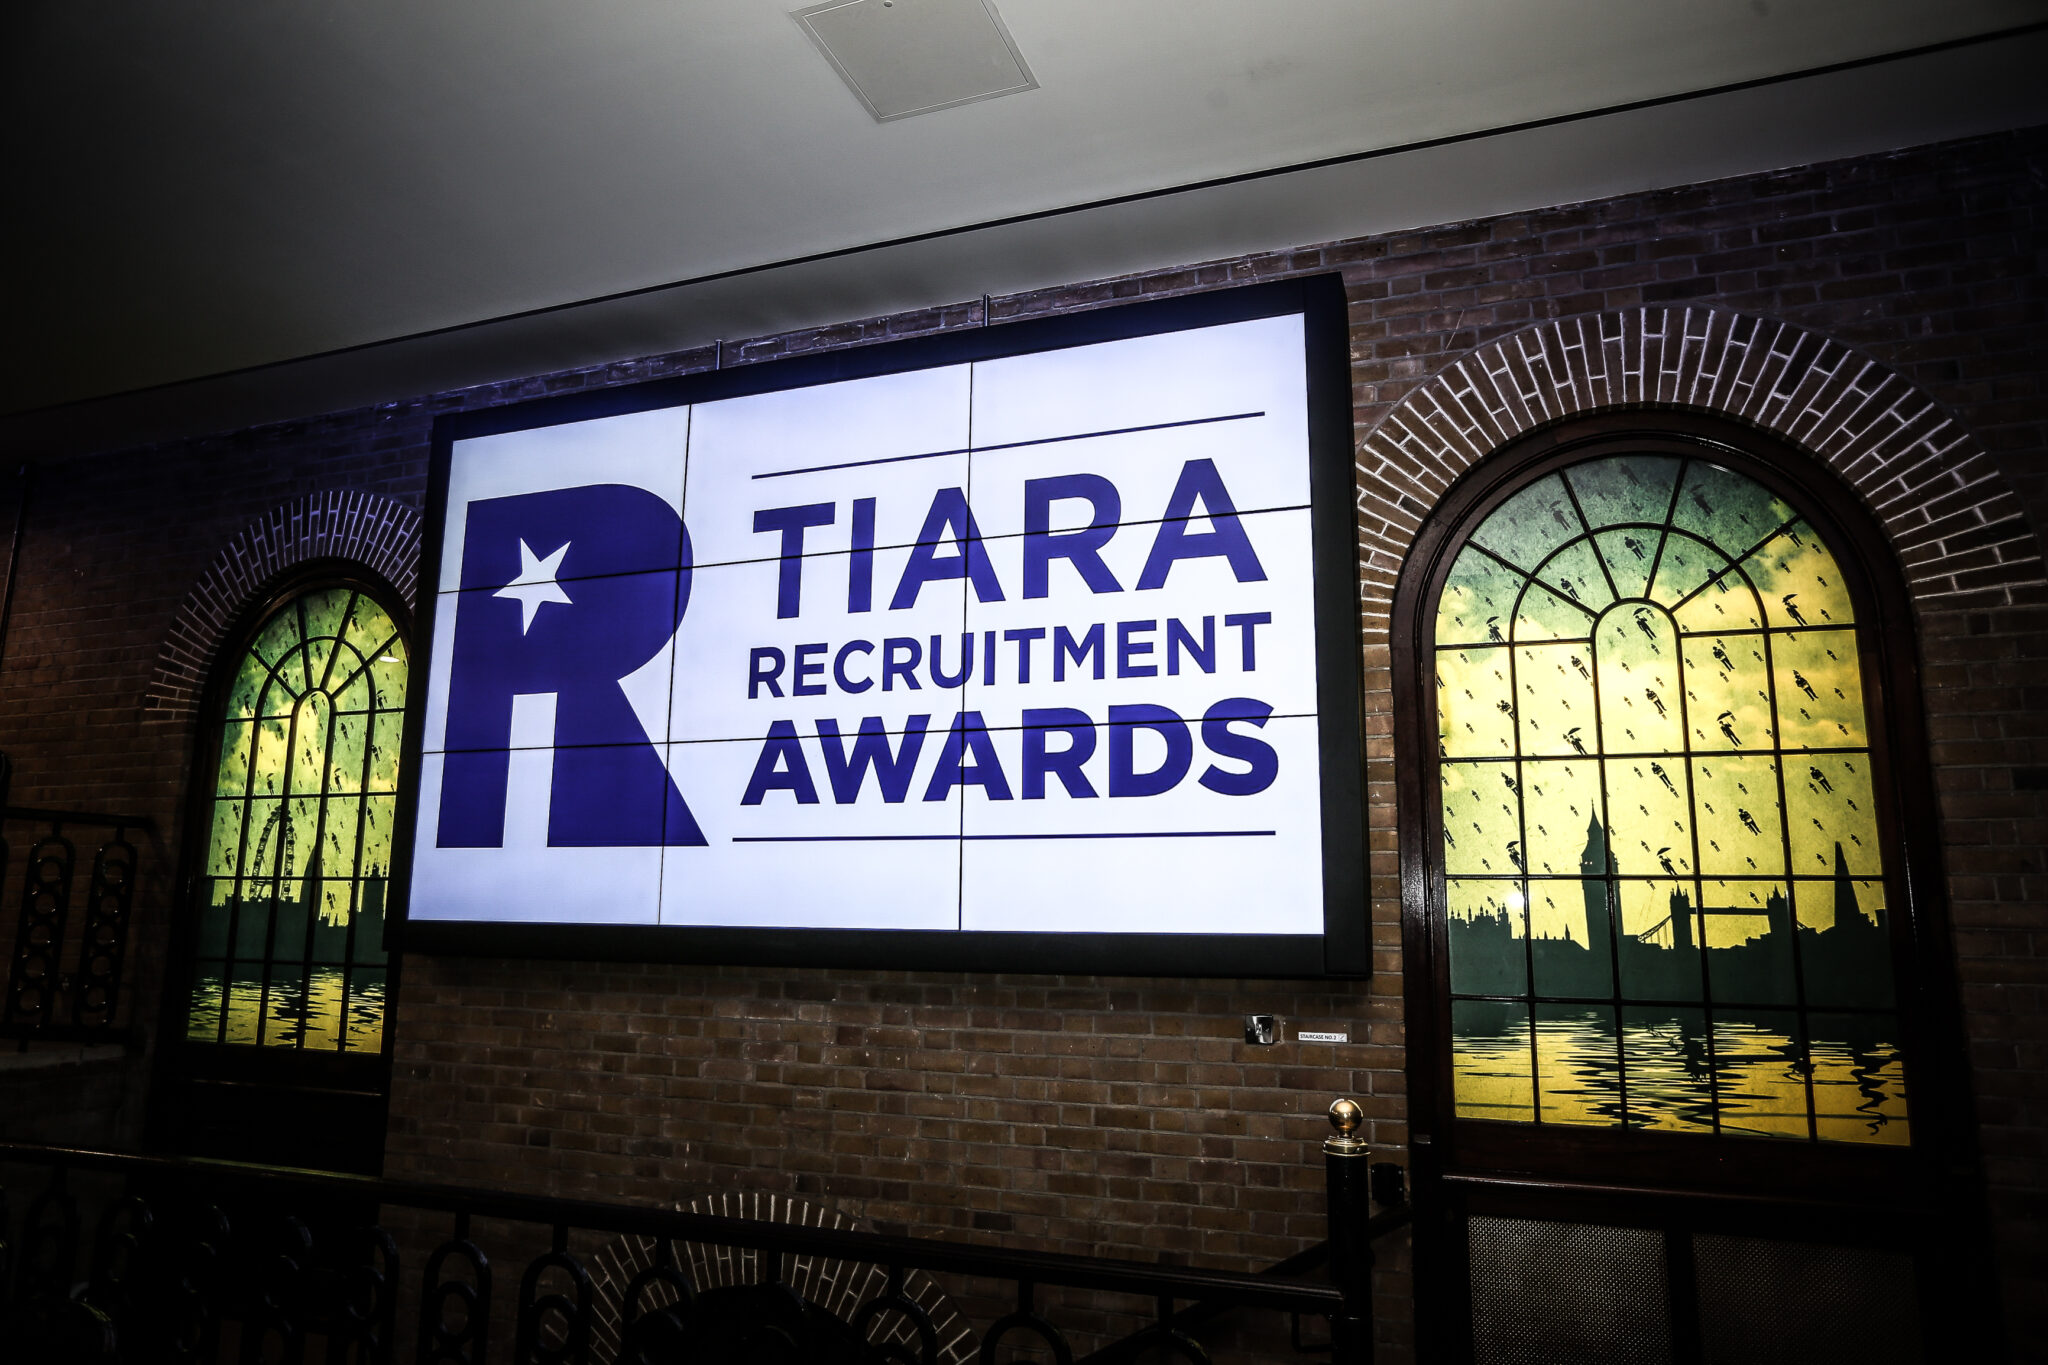 TIARA Recruitment Awards at The Brewery